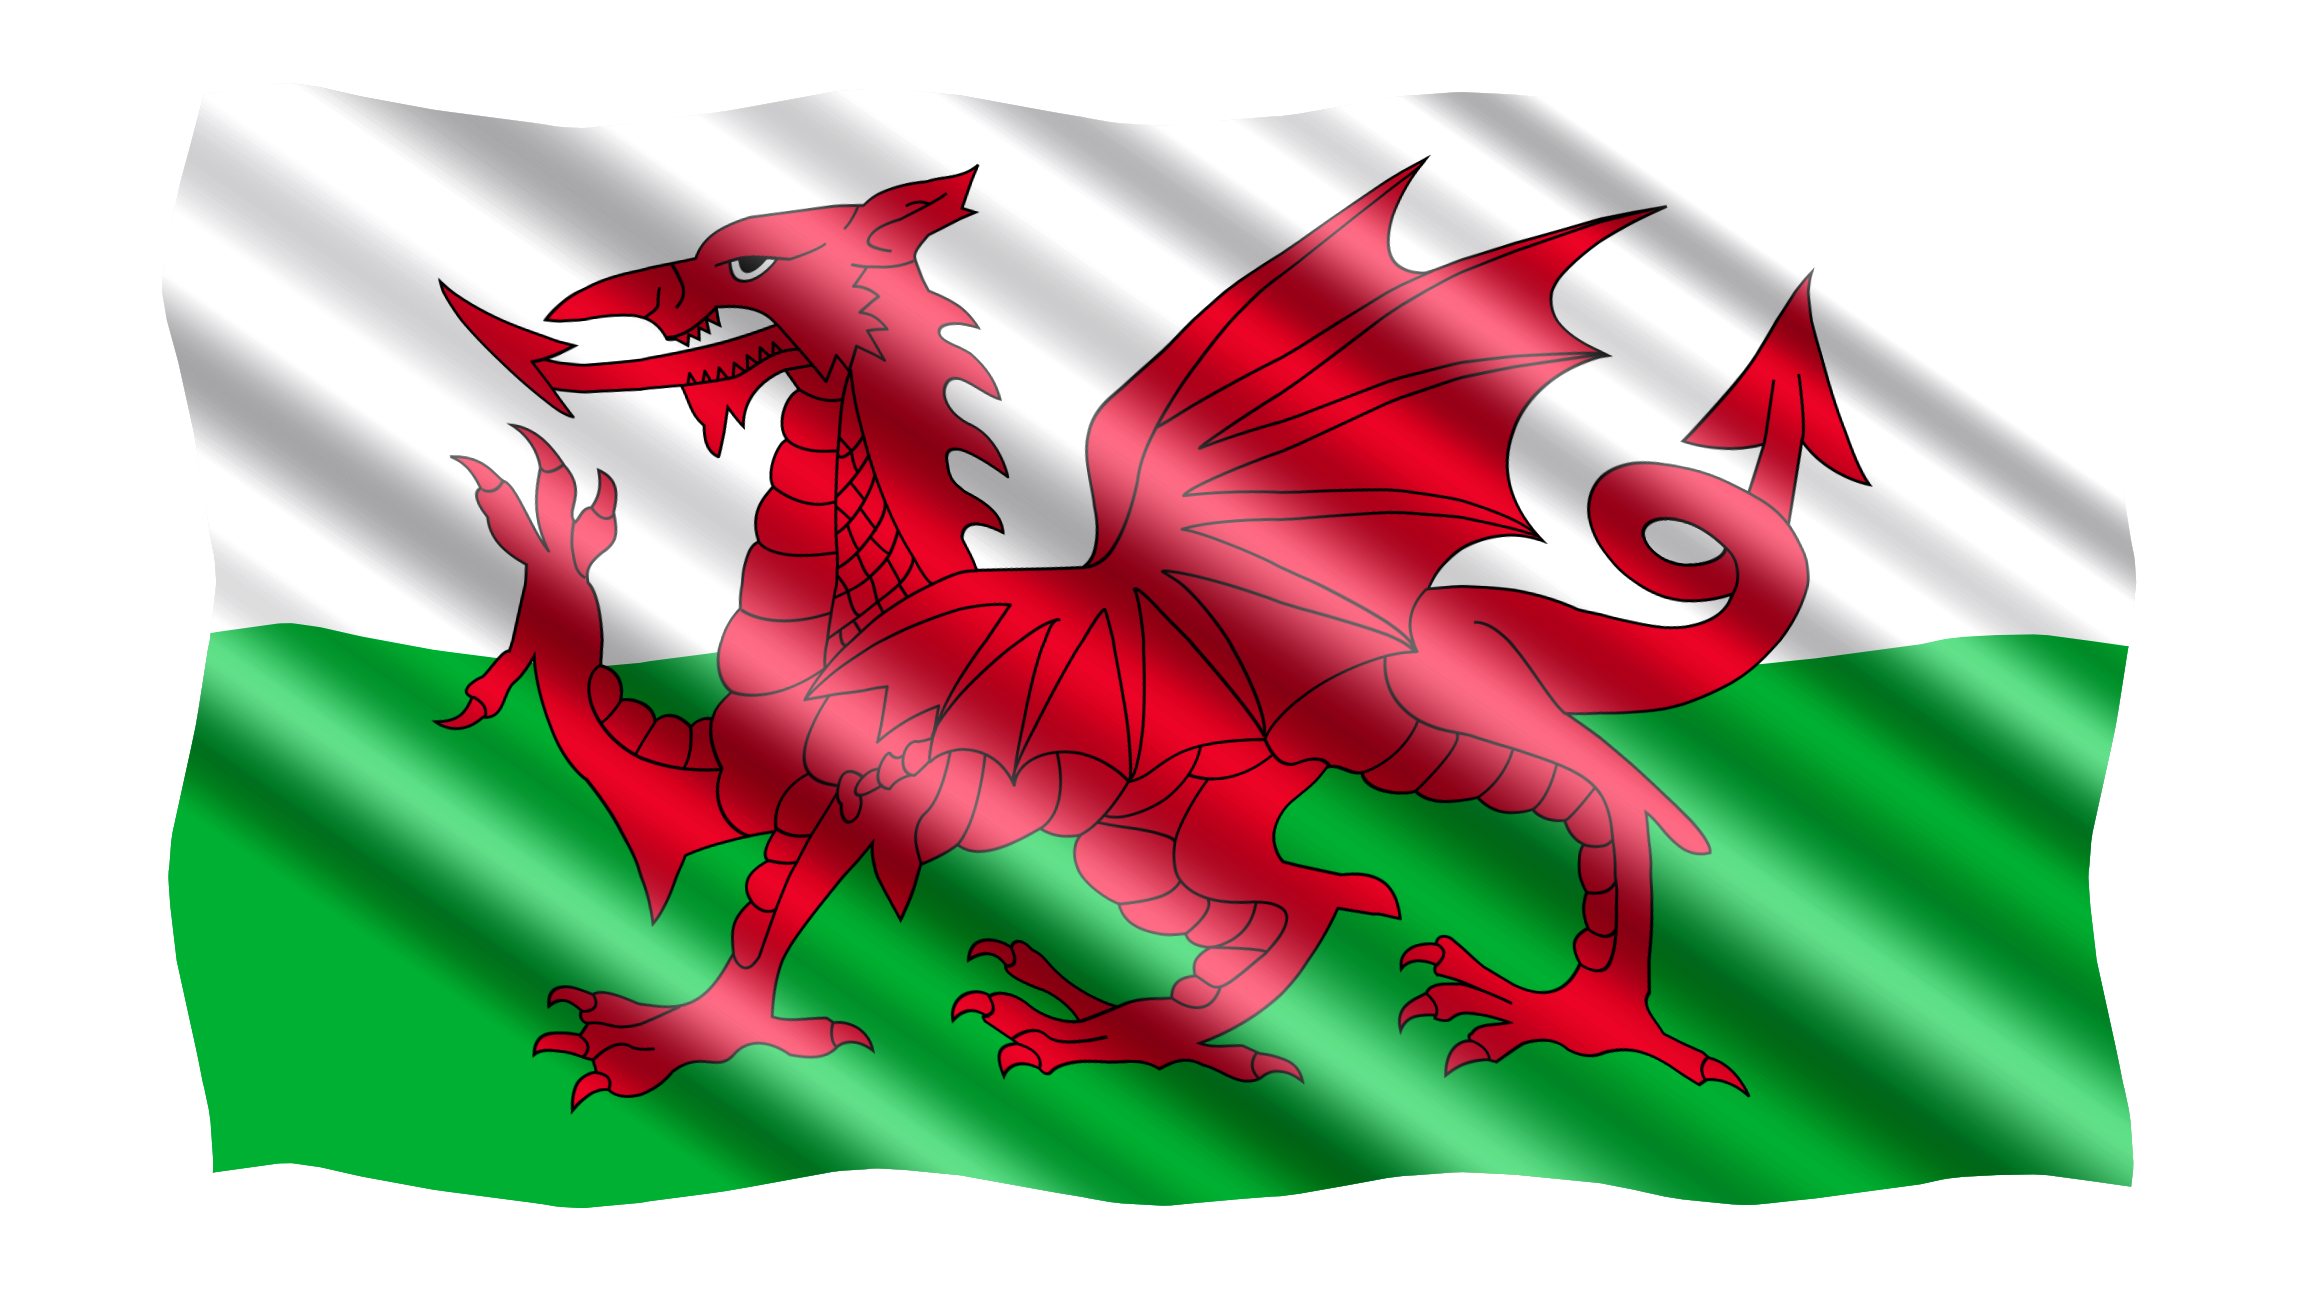 Wales Red Dragon Flag in TrueKolor Wrinkle Free Fabric